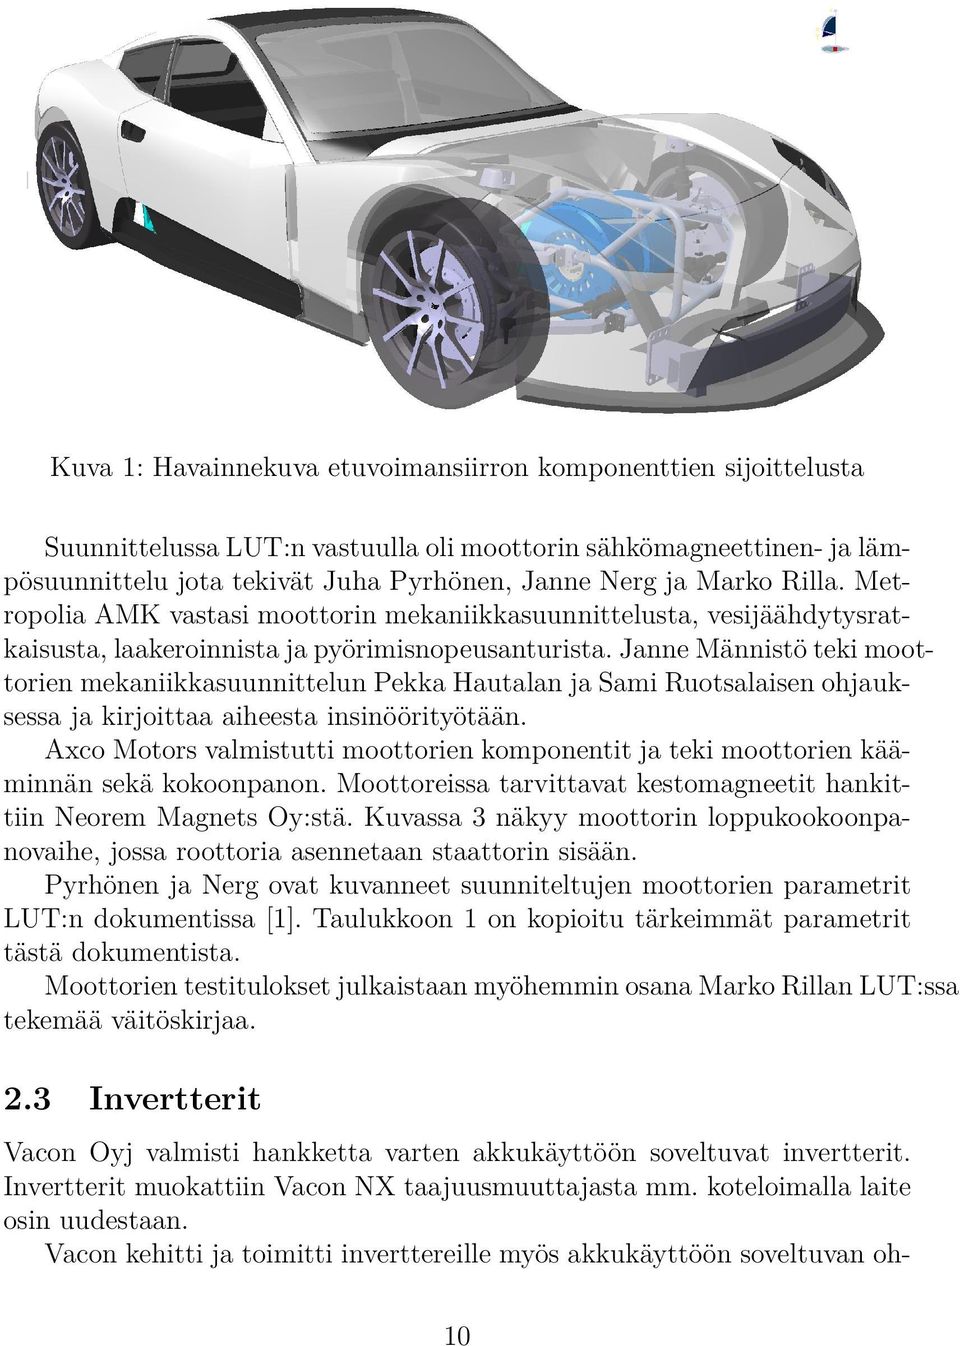 Janne Männistö teki moottorien mekaniikkasuunnittelun Pekka Hautalan ja Sami Ruotsalaisen ohjauksessa ja kirjoittaa aiheesta insinöörityötään.